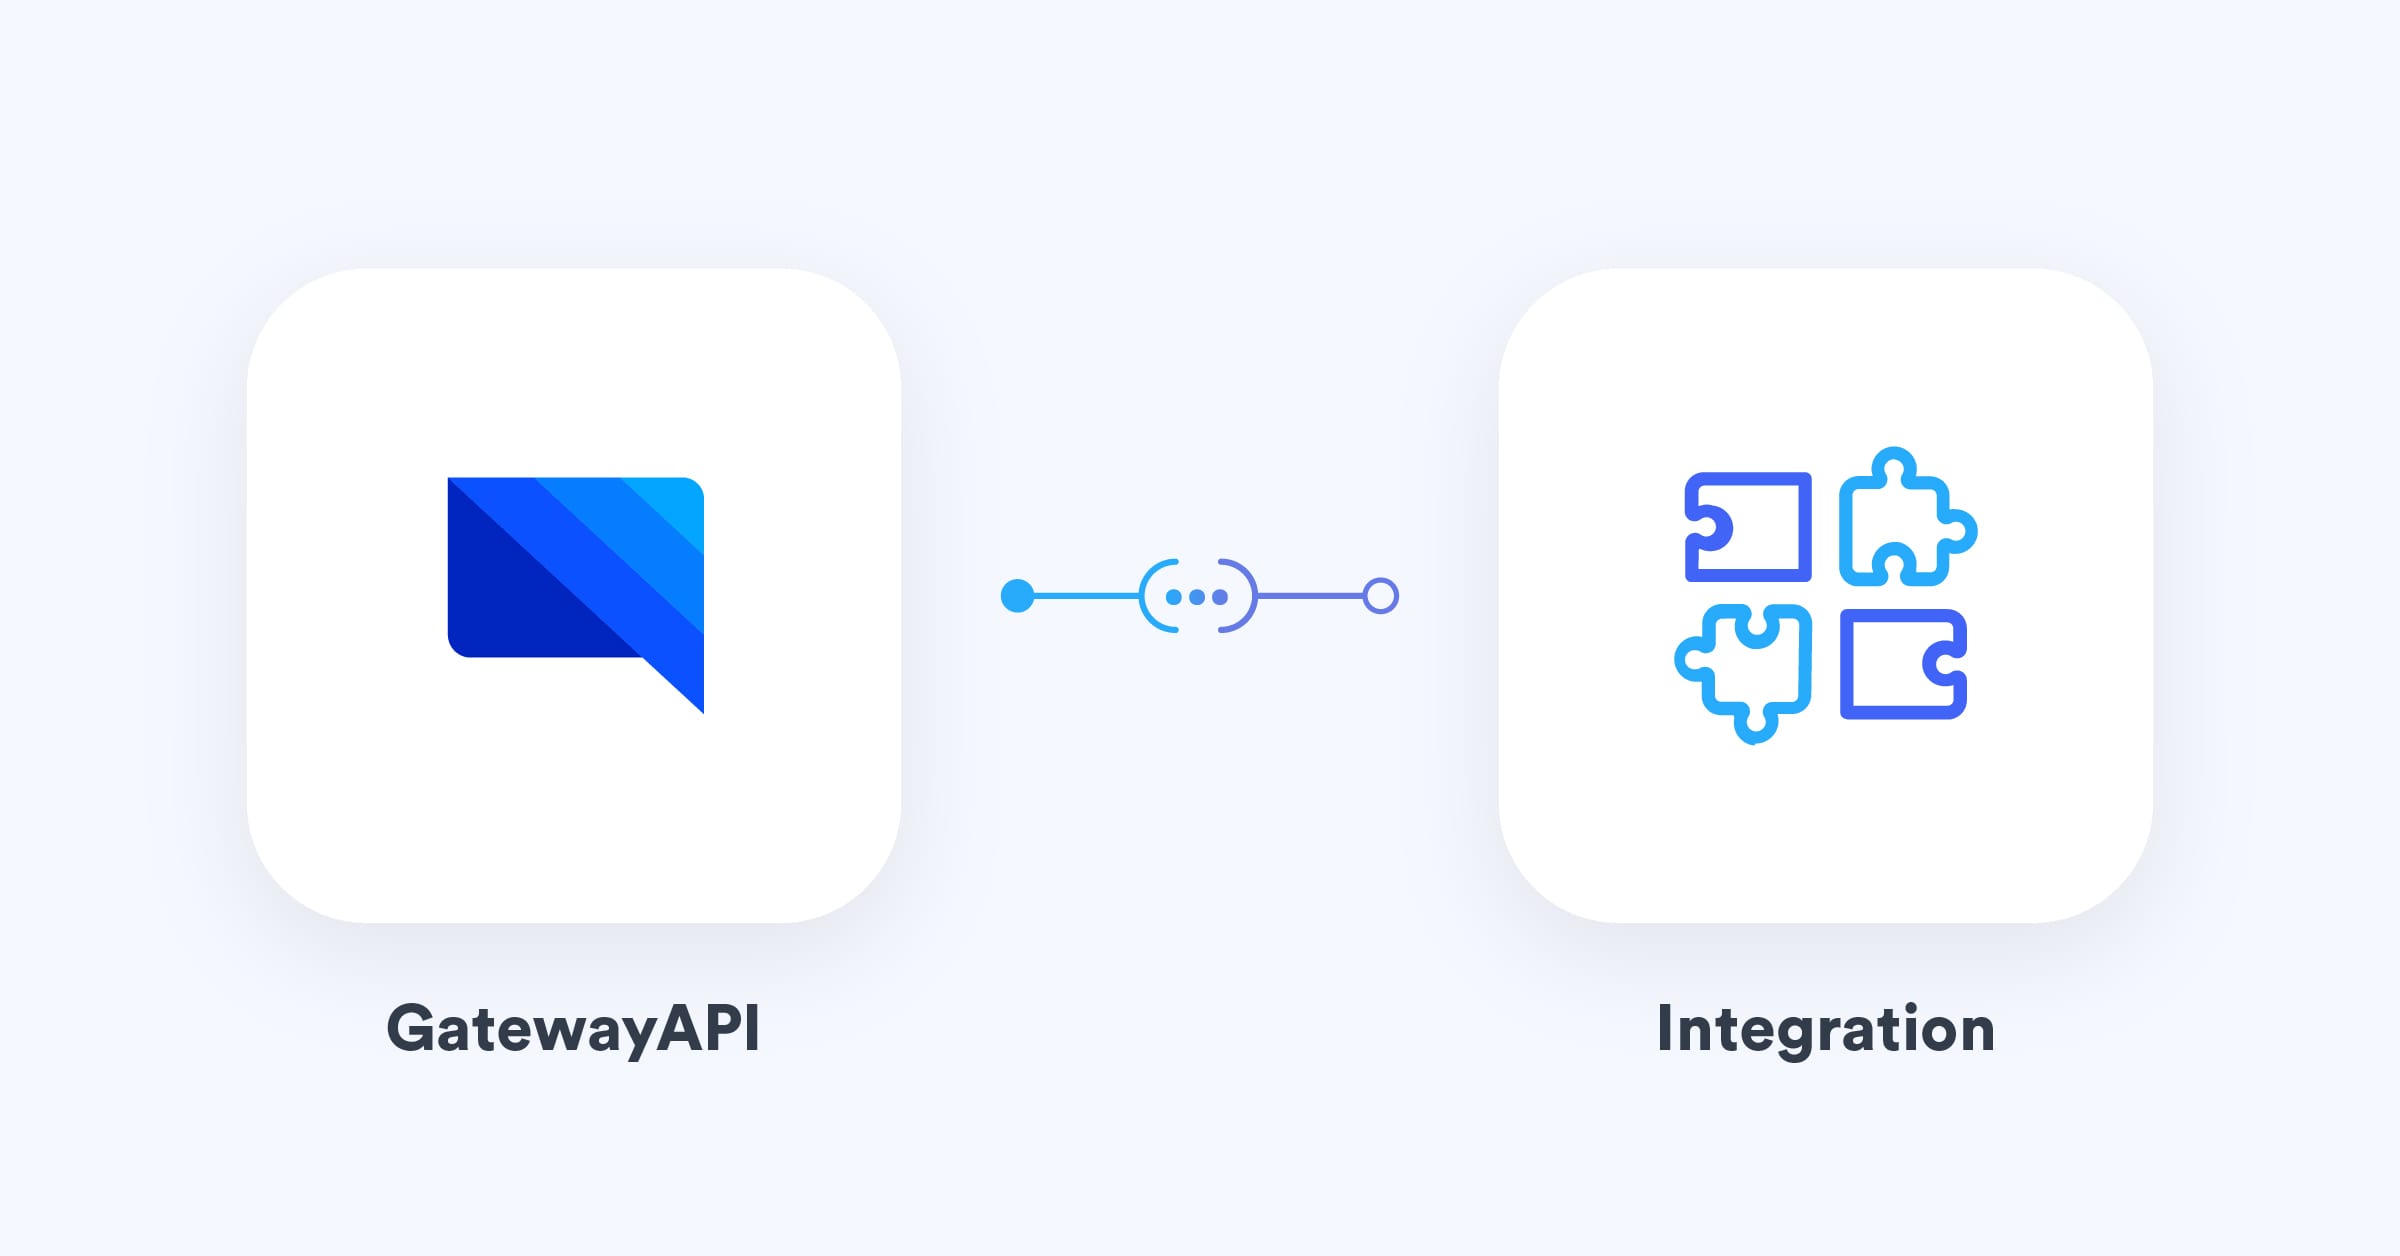 Mange integrationsmuligheder med GatewayAPI